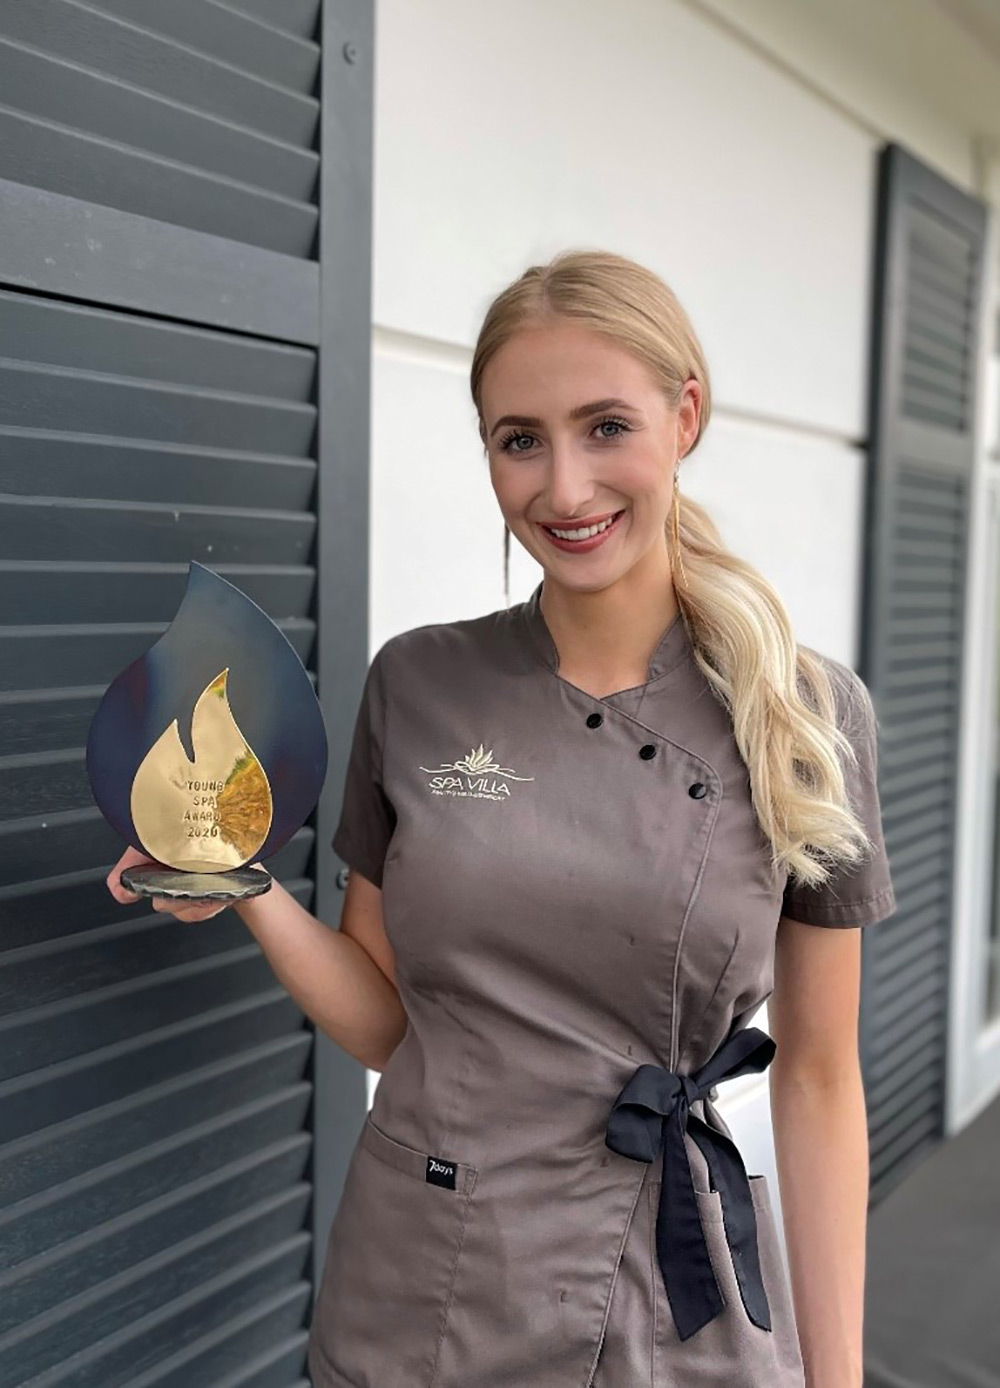 Charlotte Schmerbauch ist die Gewinnerin des Young Spa Award 2020. Foto: Charlotte Schmerbauch